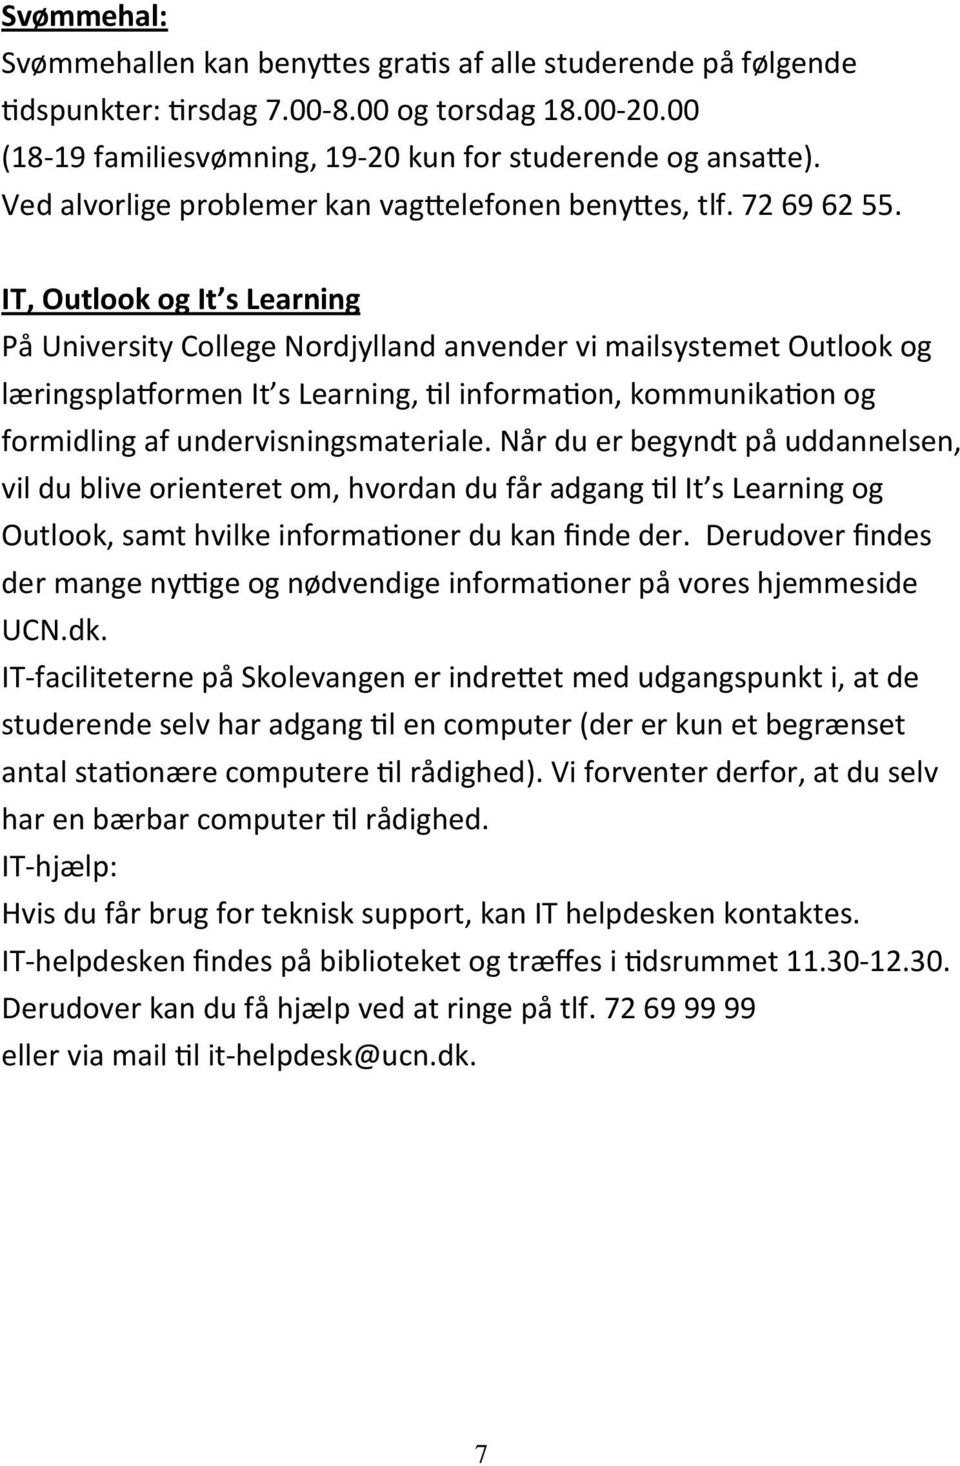 IT, Outlook og It s Learning På University College Nordjylland anvender vi mailsystemet Outlook og læringspla ormen It s Learning, l informa on, kommunika on og formidling af undervisningsmateriale.